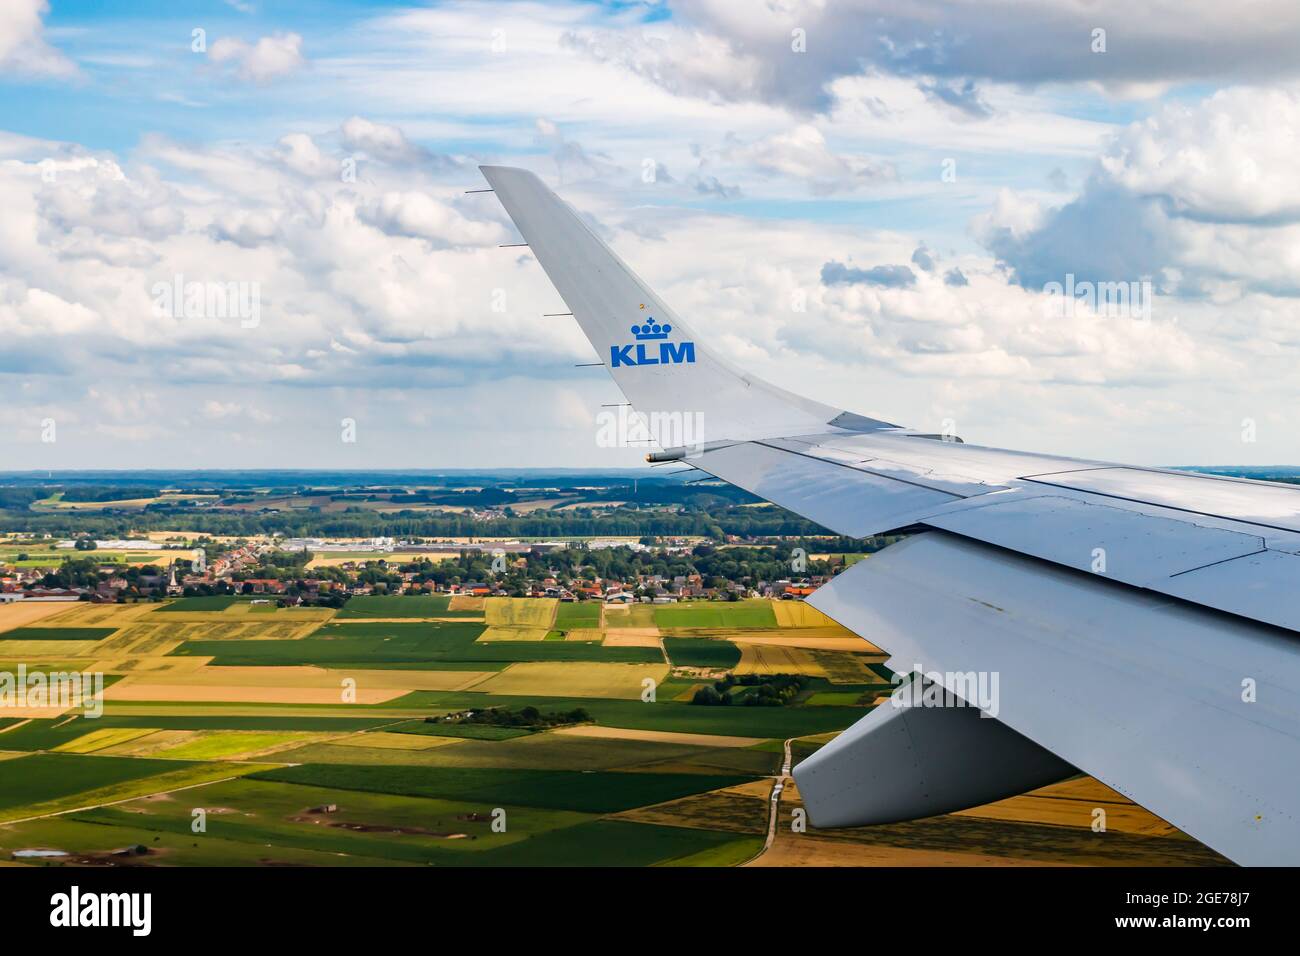 Bruxelles, Belgique - 7 juillet 2021 : KLM Plain Wing over Belgium. Vol d'Amsterdam à Bruxelles. La plaine atterrit. Banque D'Images